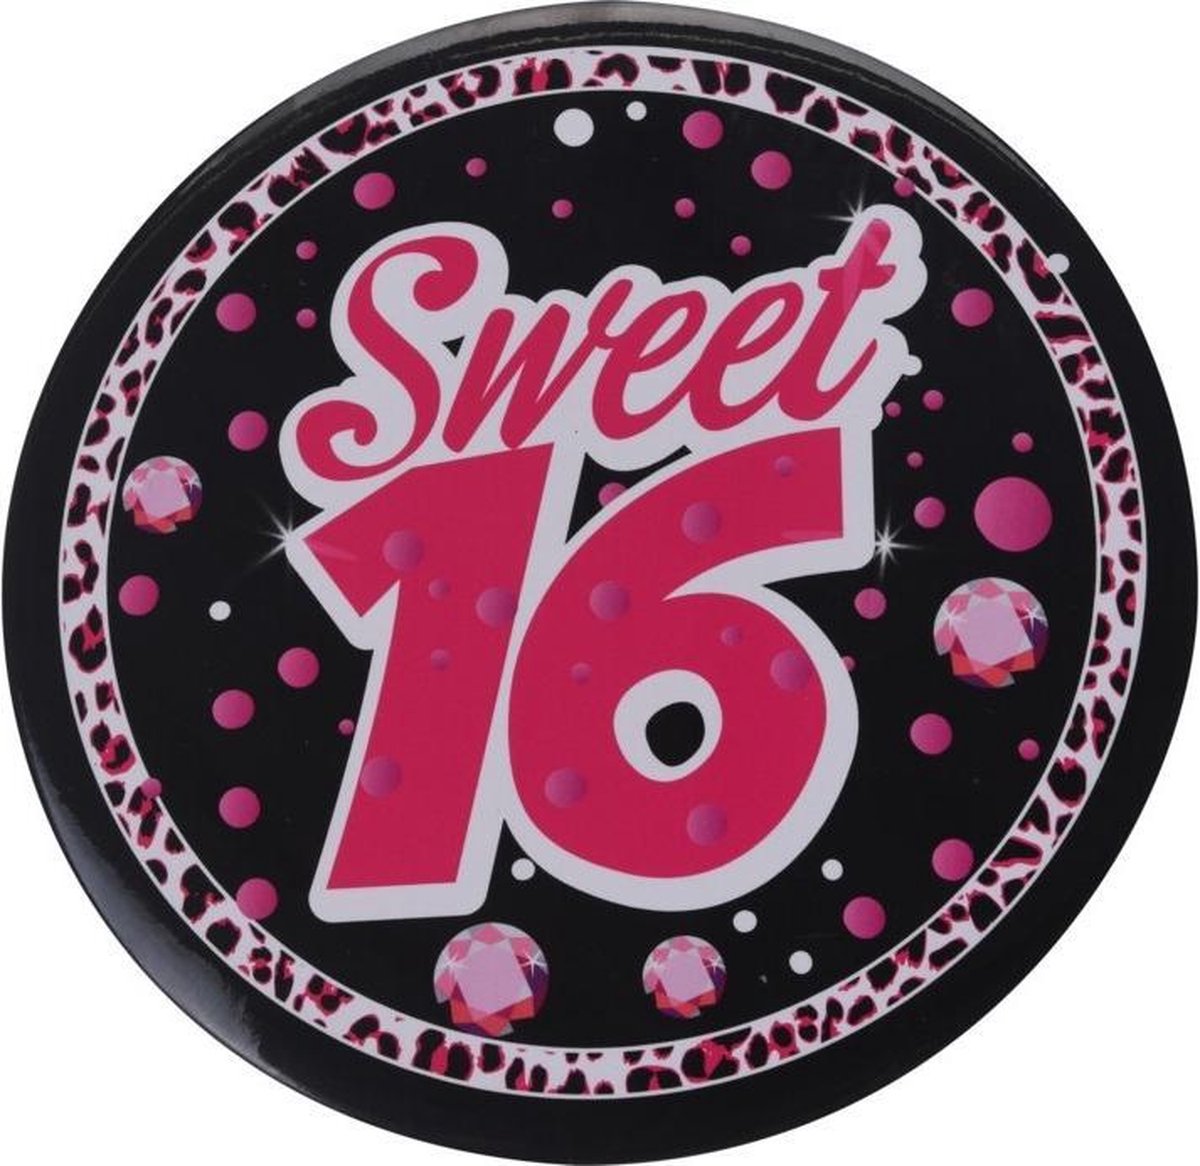 Tom Button Sweet Sixteen 15 Cm Roze/zwart